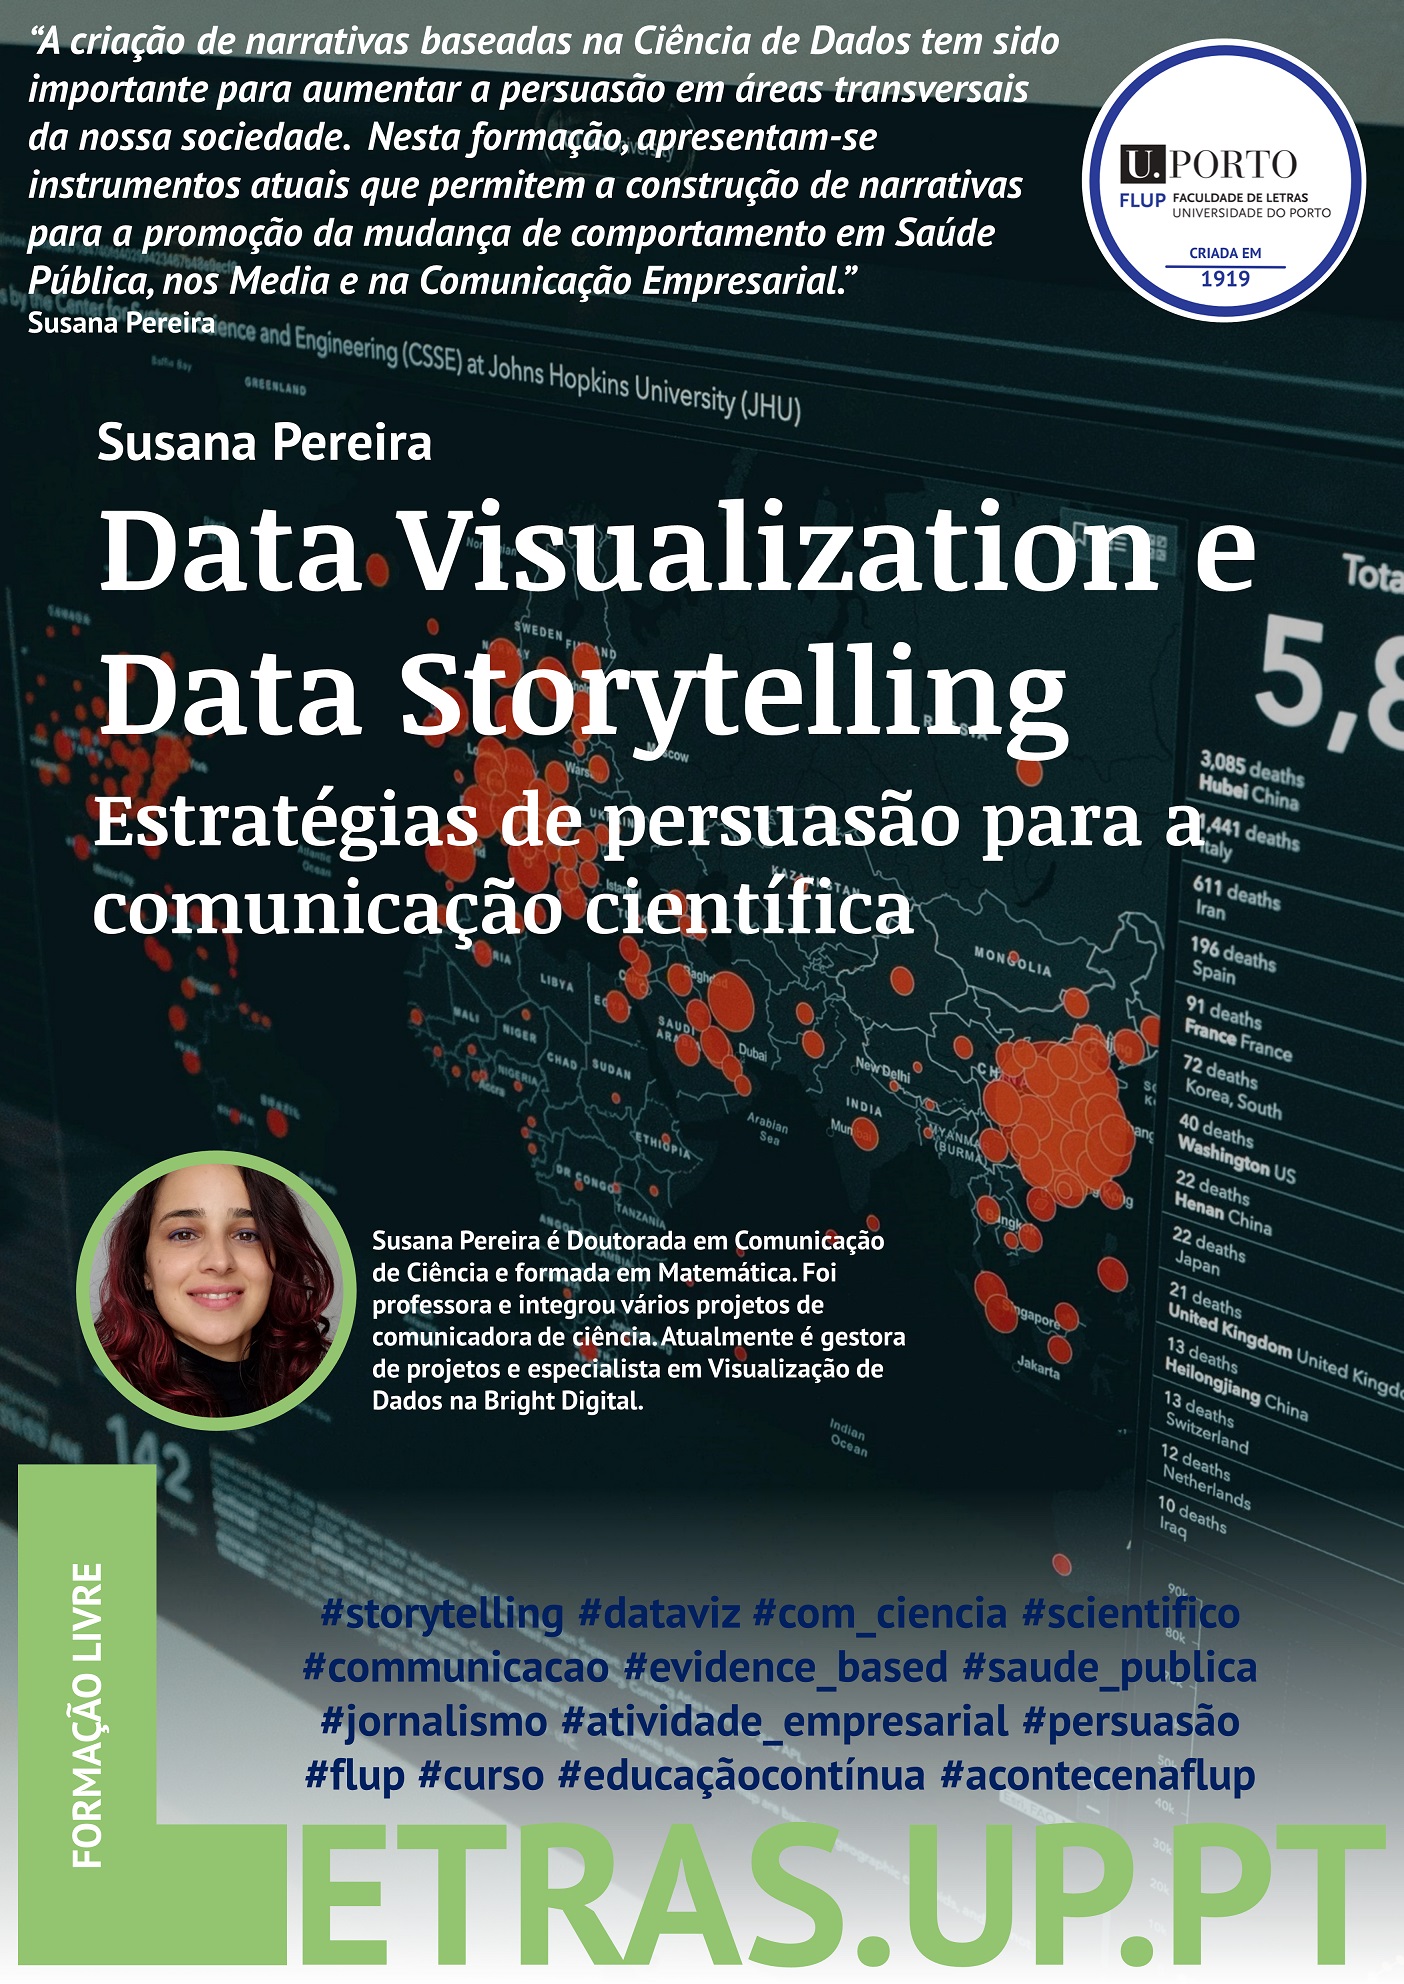 Data Visualization e Data Storytelling - estratégias de persuasão para a comunicação científica